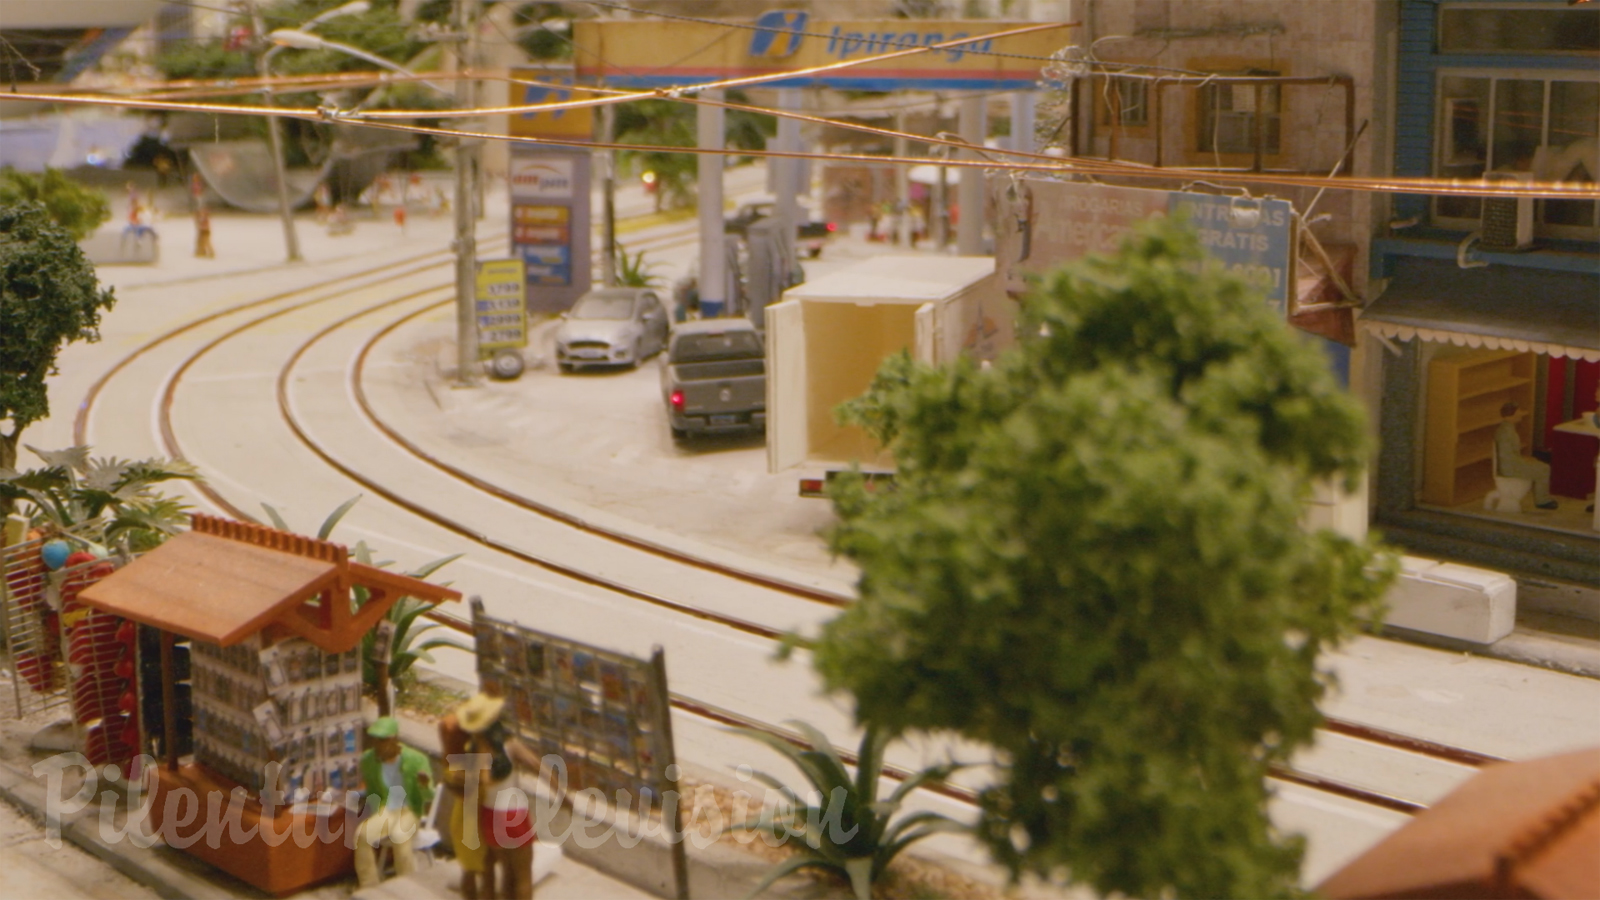 Maquete de trem do Rio de Janeiro - Model train diorama and model railway scenery of Brazil